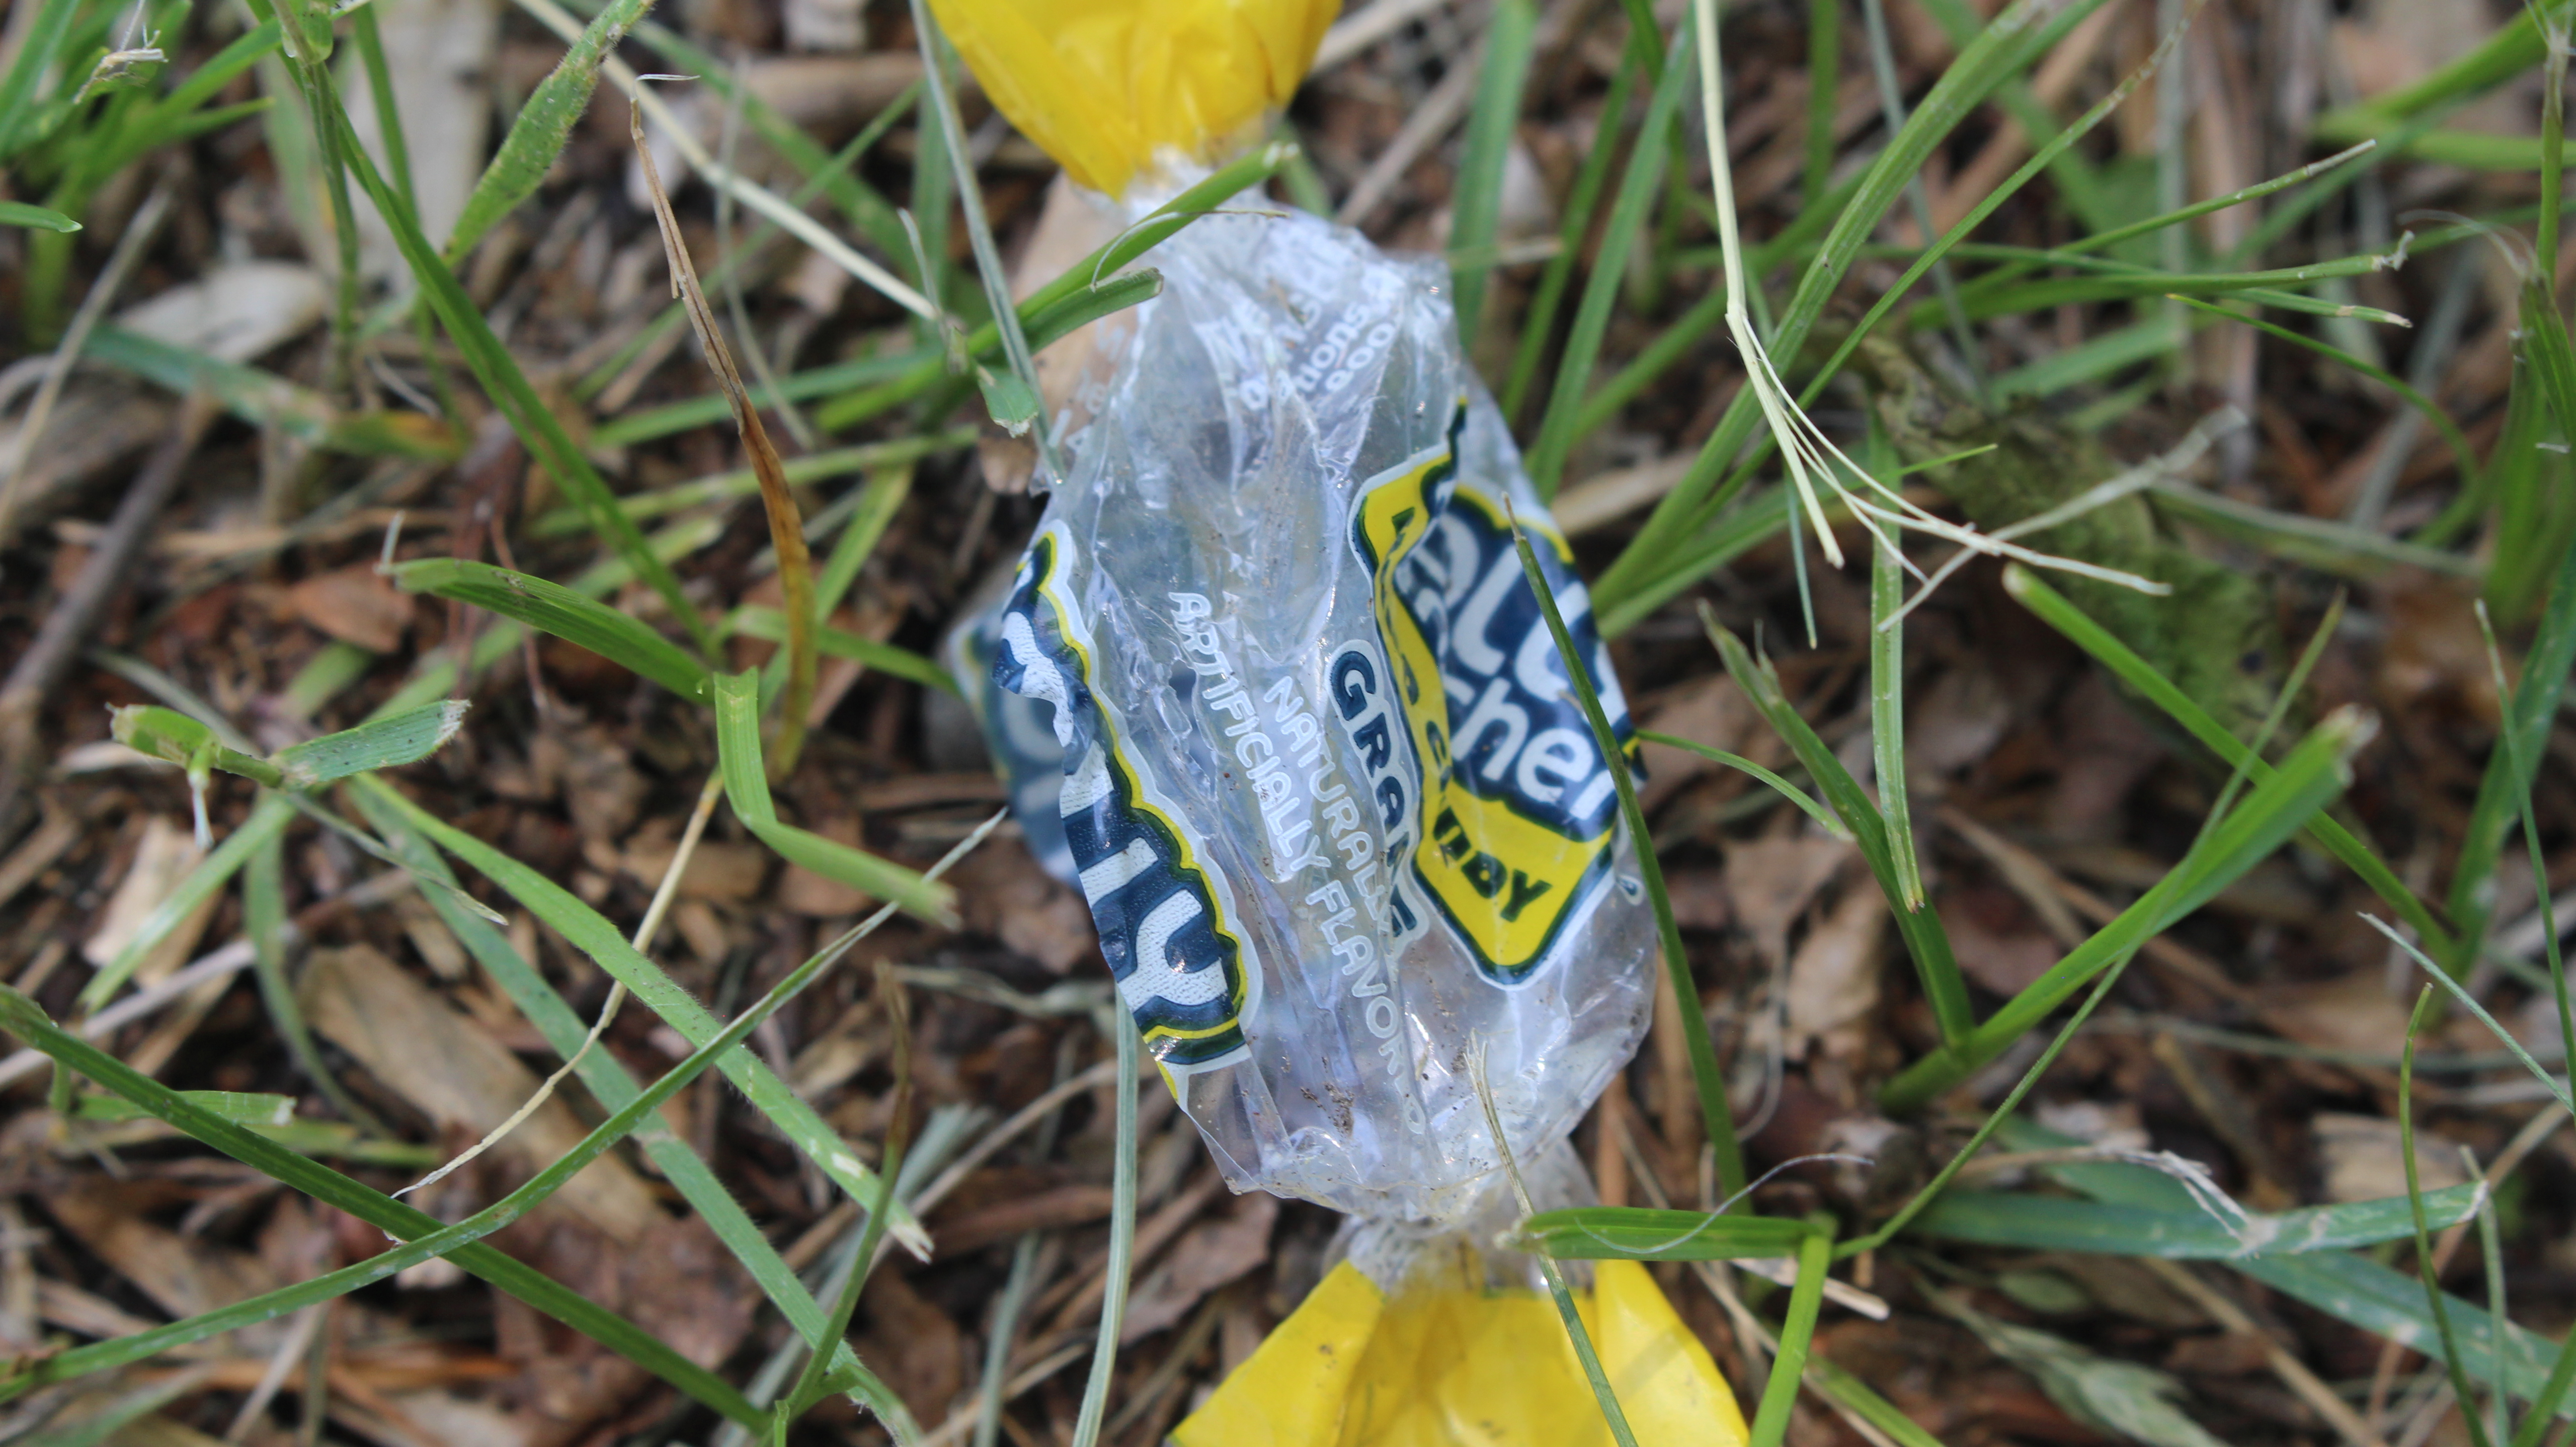 a plastic wrapper in grass